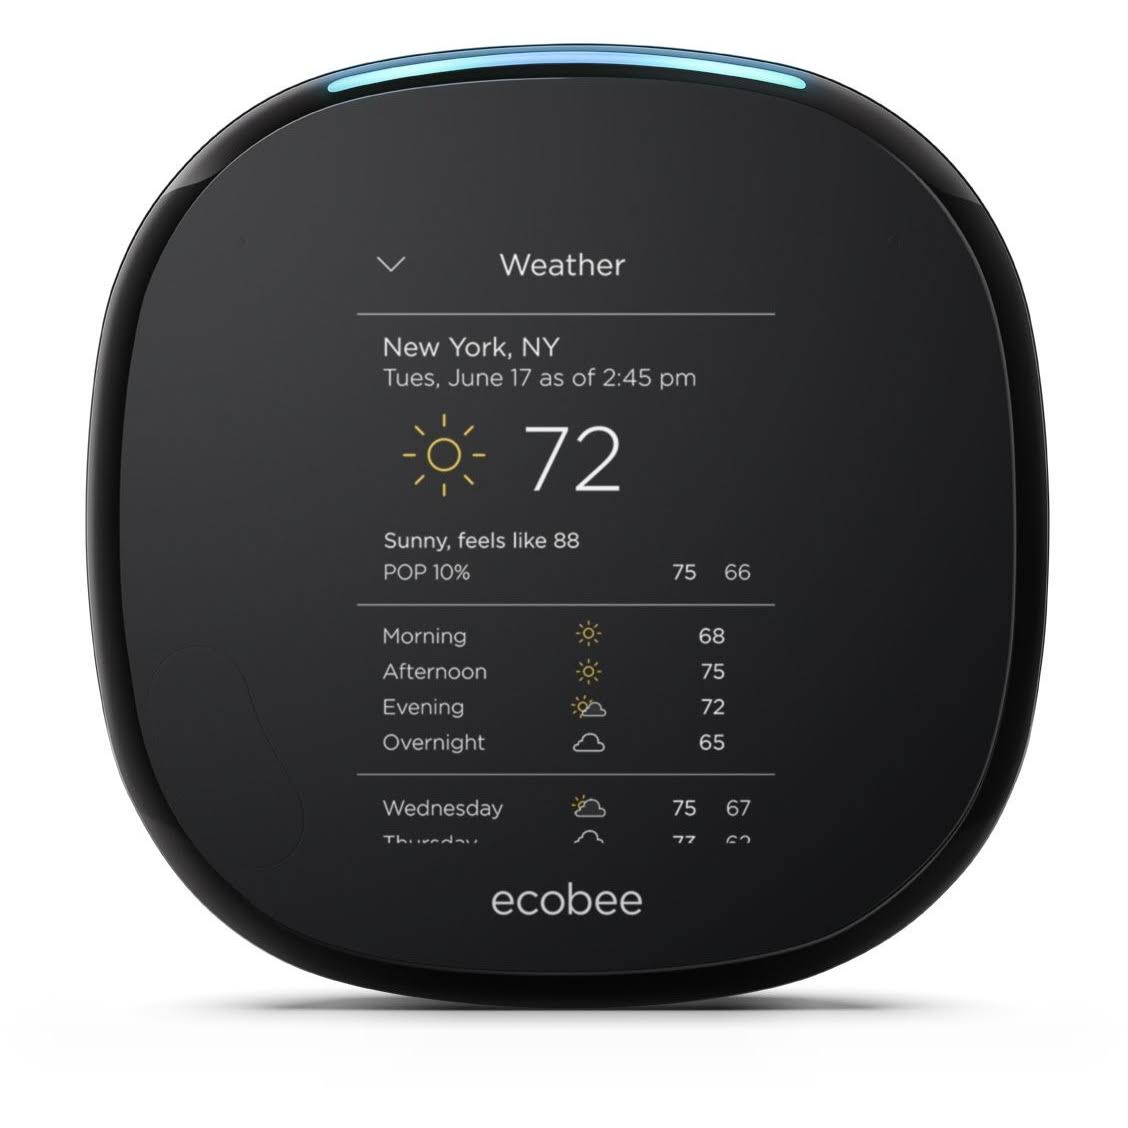 ecobee 带传感器的支持 Alexa 的恒温器，可与 Amazon Alexa 配合使用